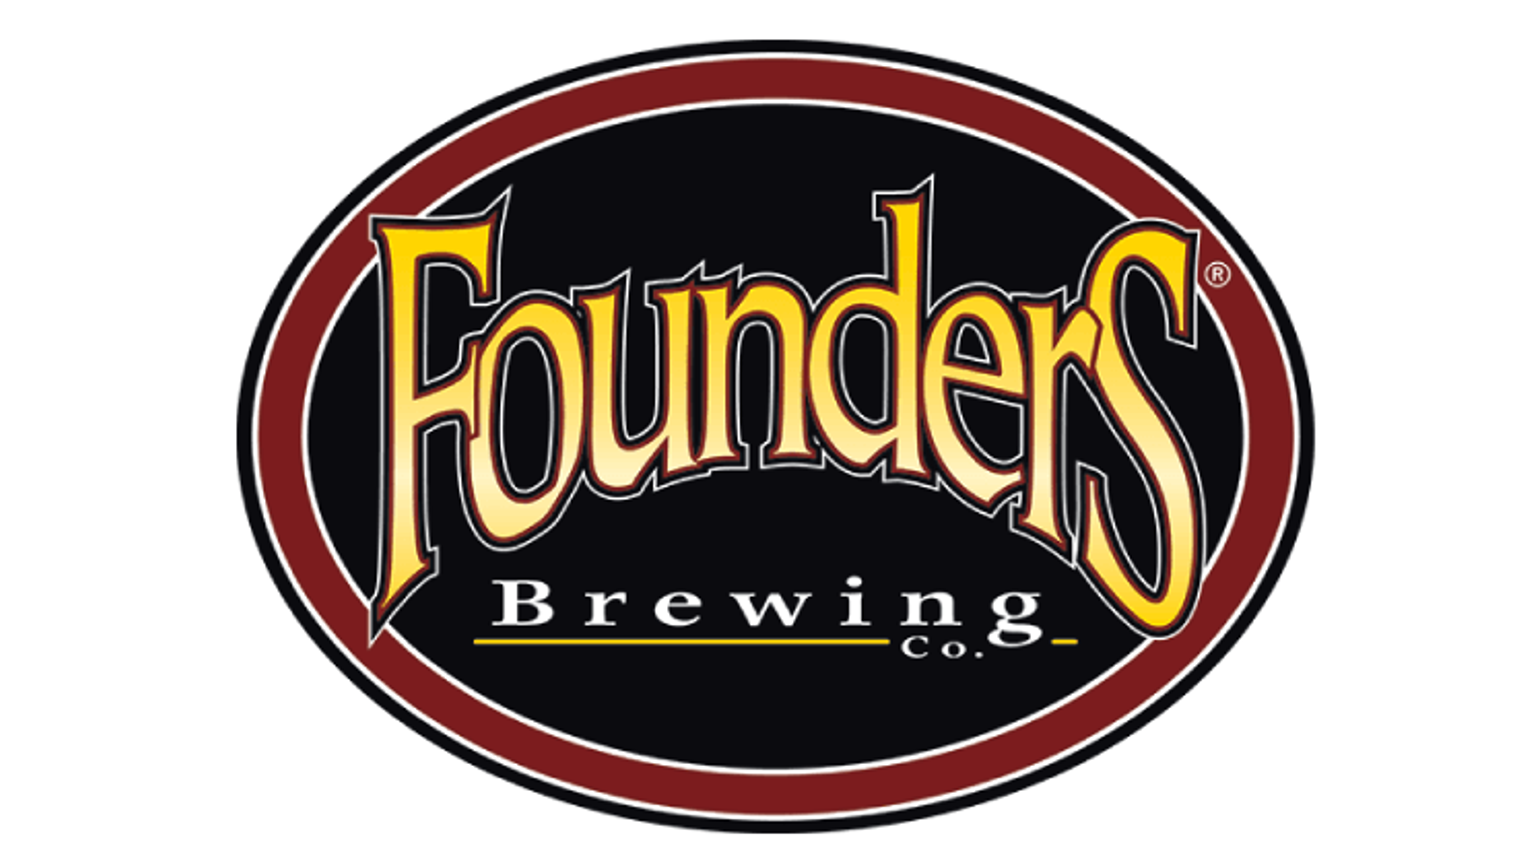 thumbnail for blog article named: Founders, una de las mejores cervecerías  del mundo.